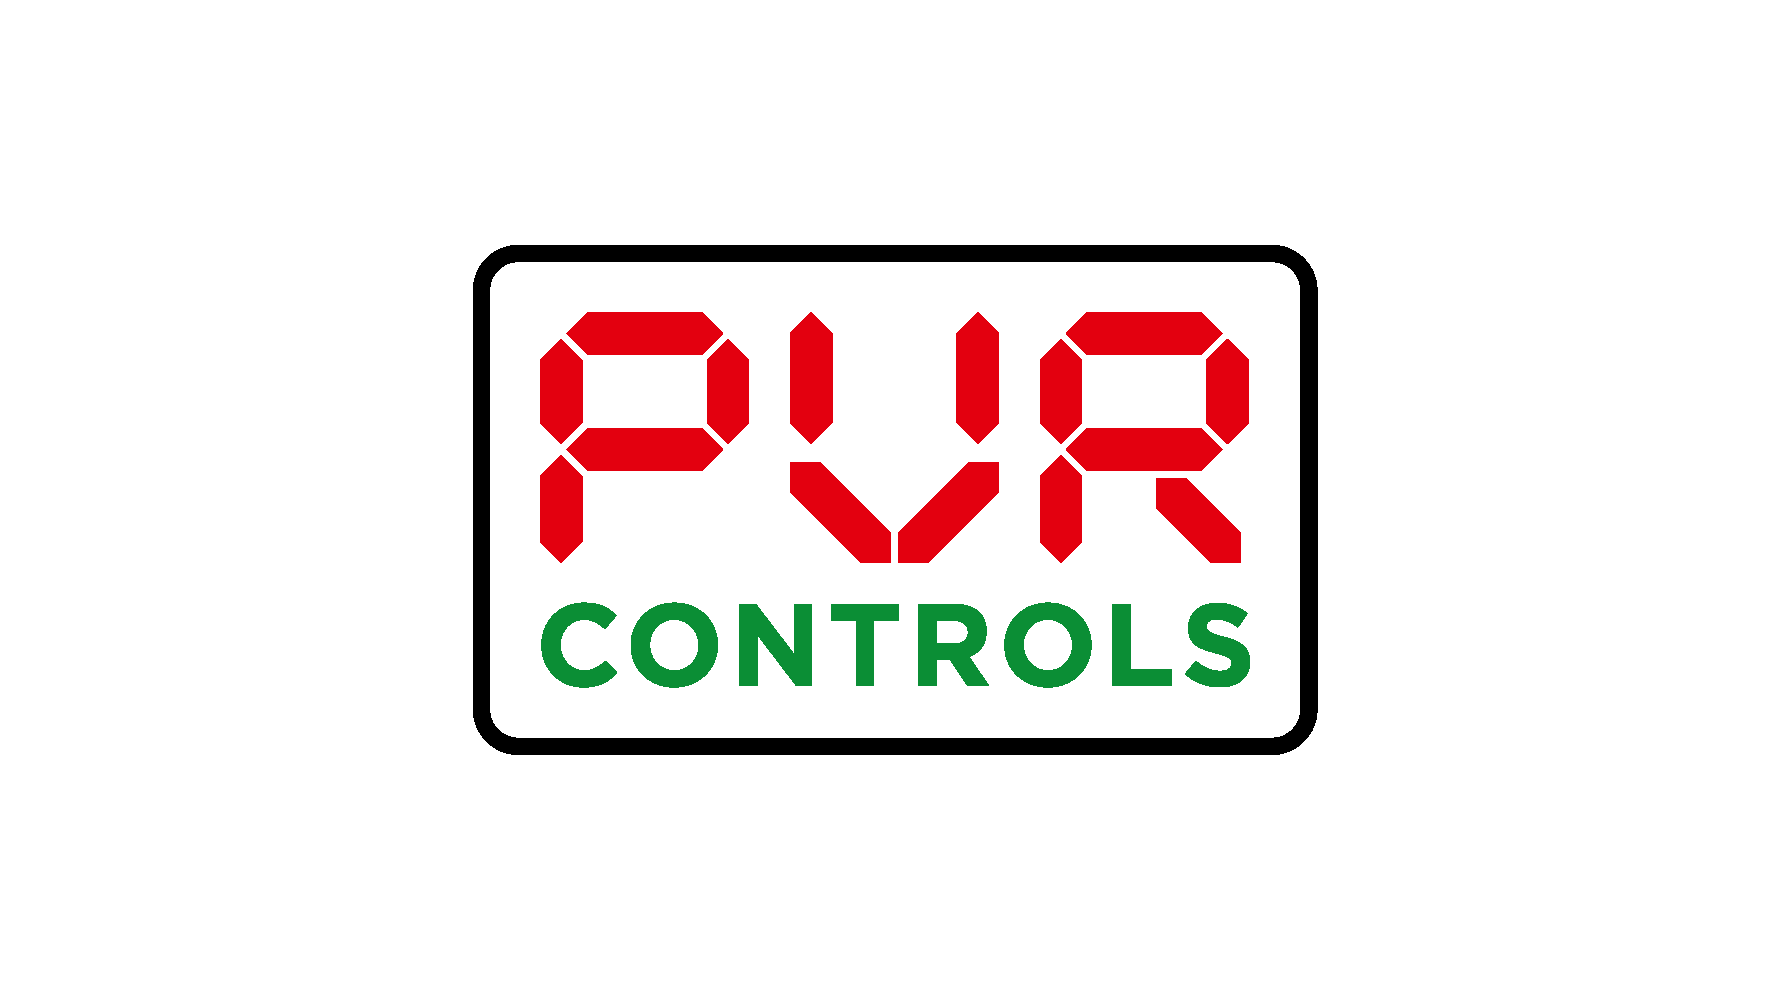 PVR Controls